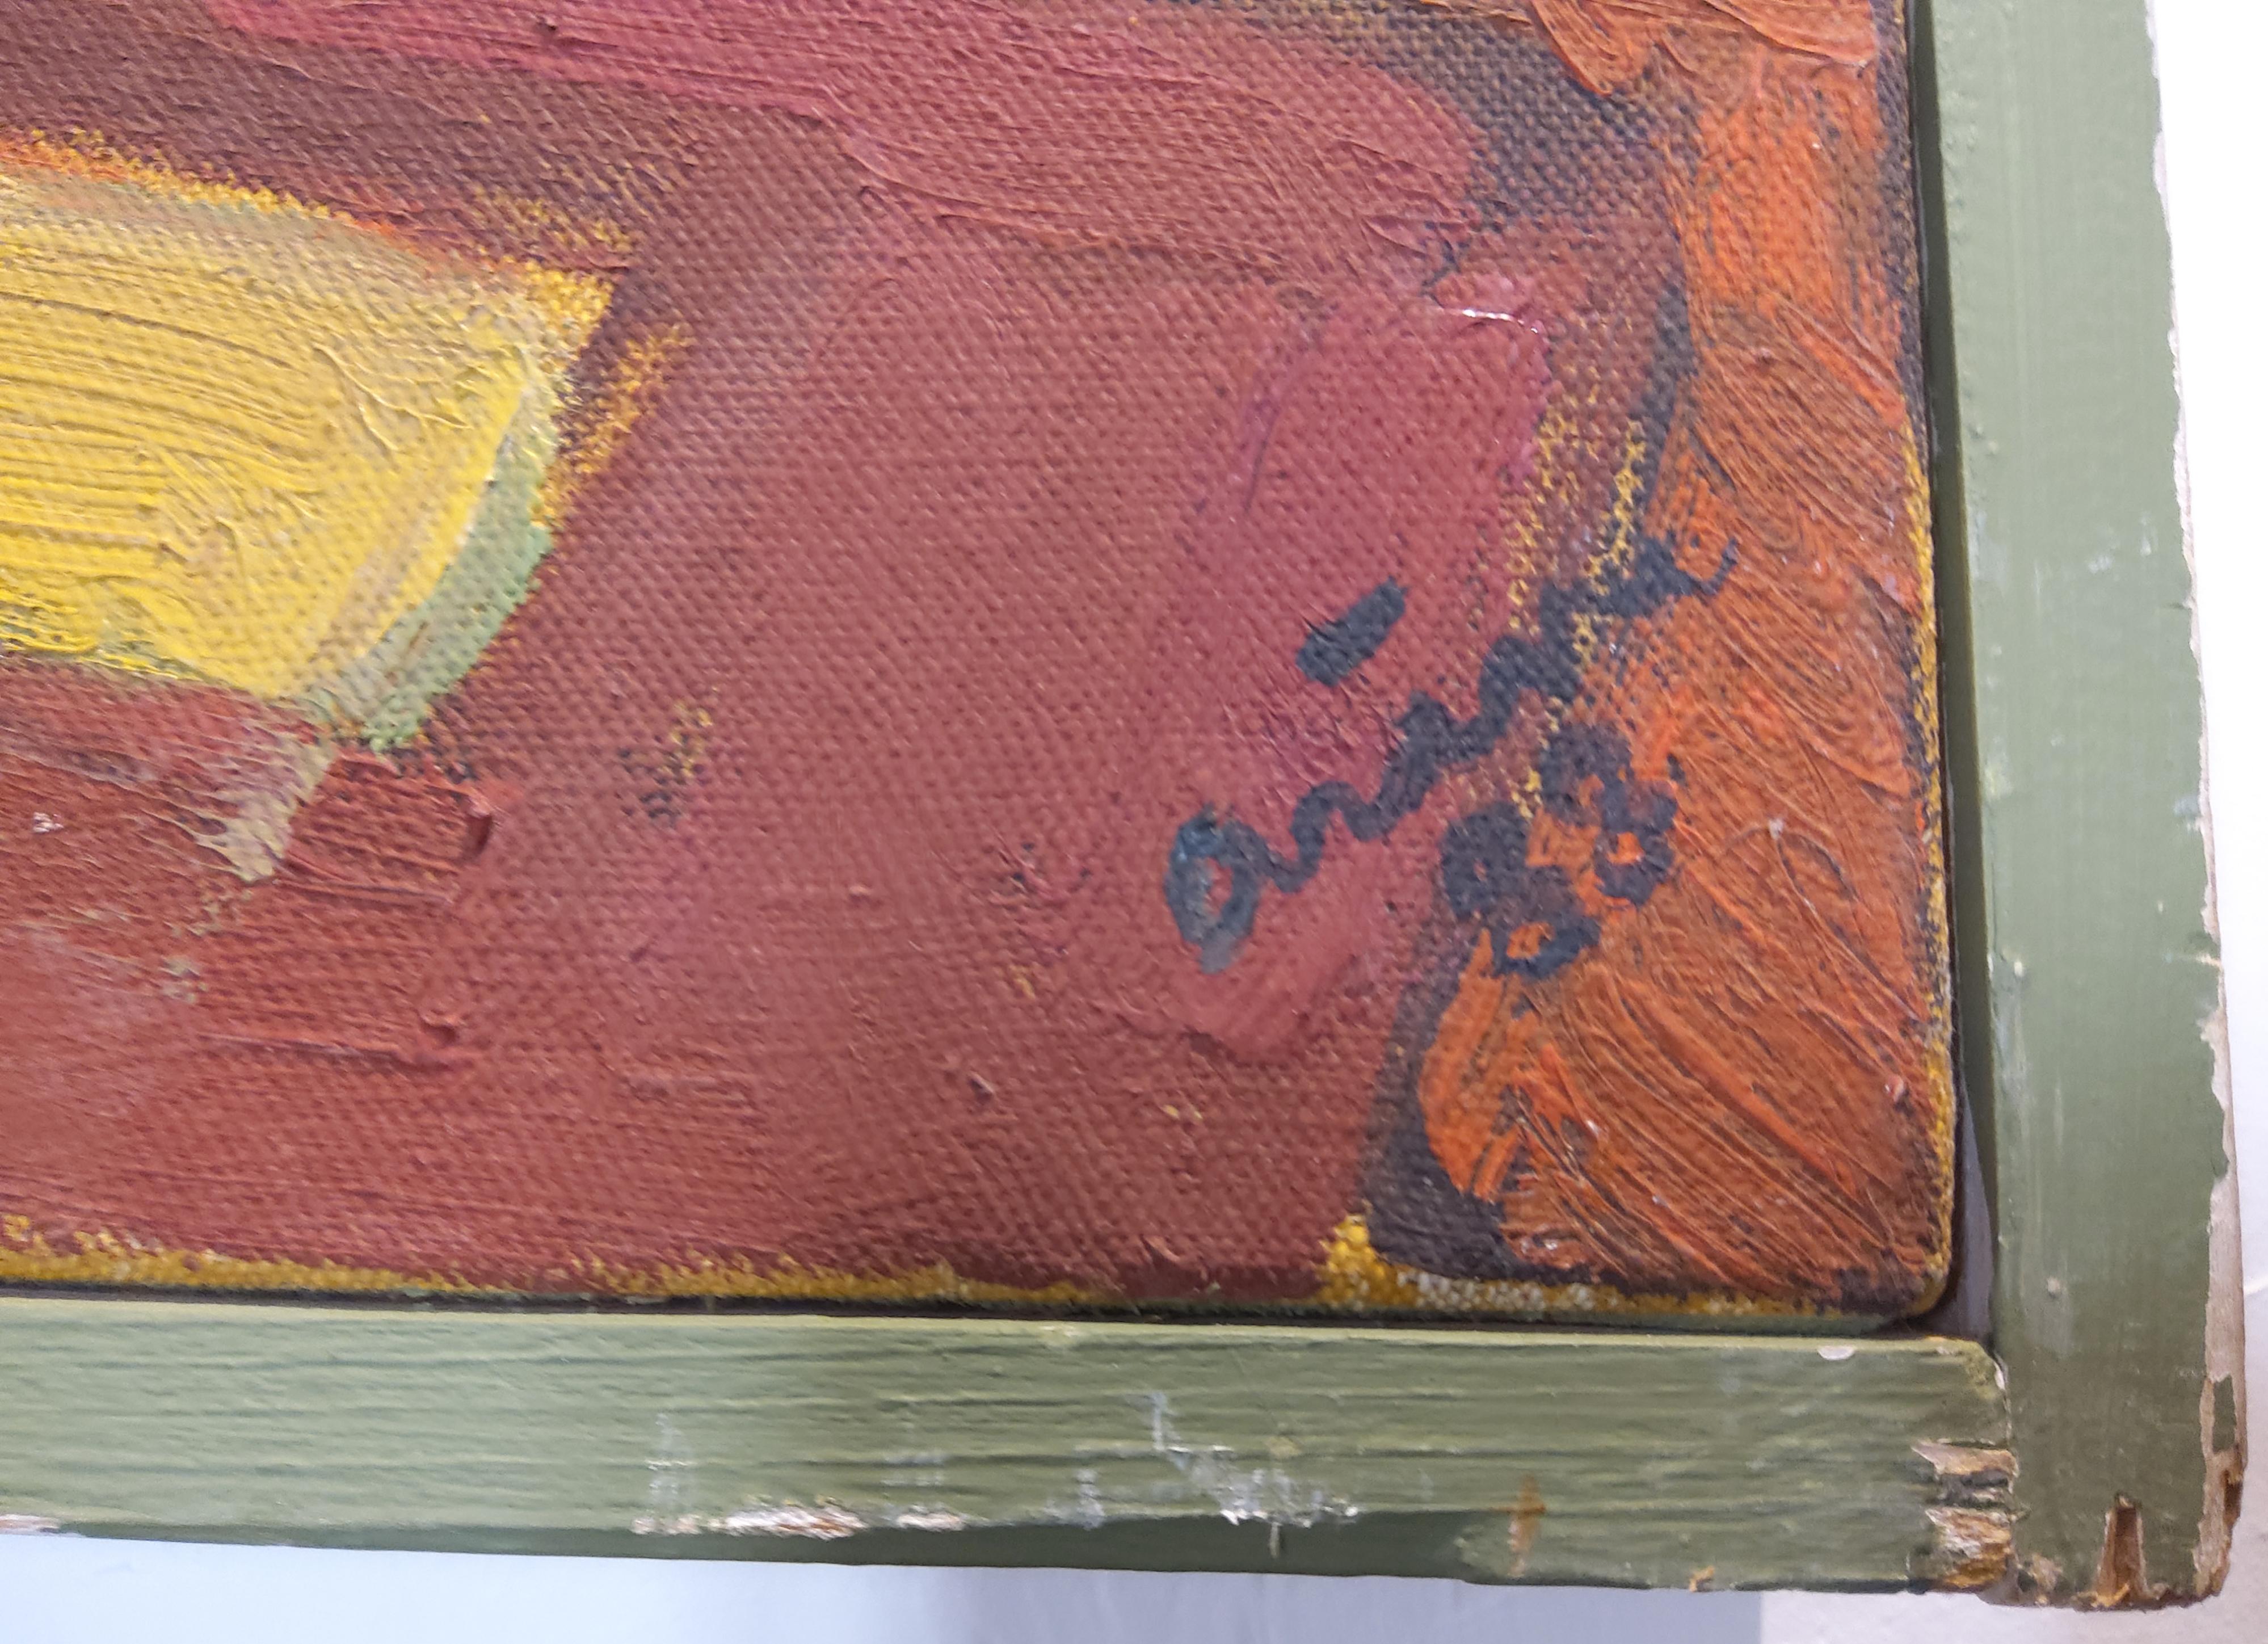 Großer ruhender weiblicher Akt, fauvistisches Öl auf Leinwand von Jean Arène (1929 - 2020).

Diese große Darstellung eines weiblichen Aktes, der auf einem sehr dekorativen Kelim liegt, ist von Gaugin und seiner Serie von Gemälden polynesischer